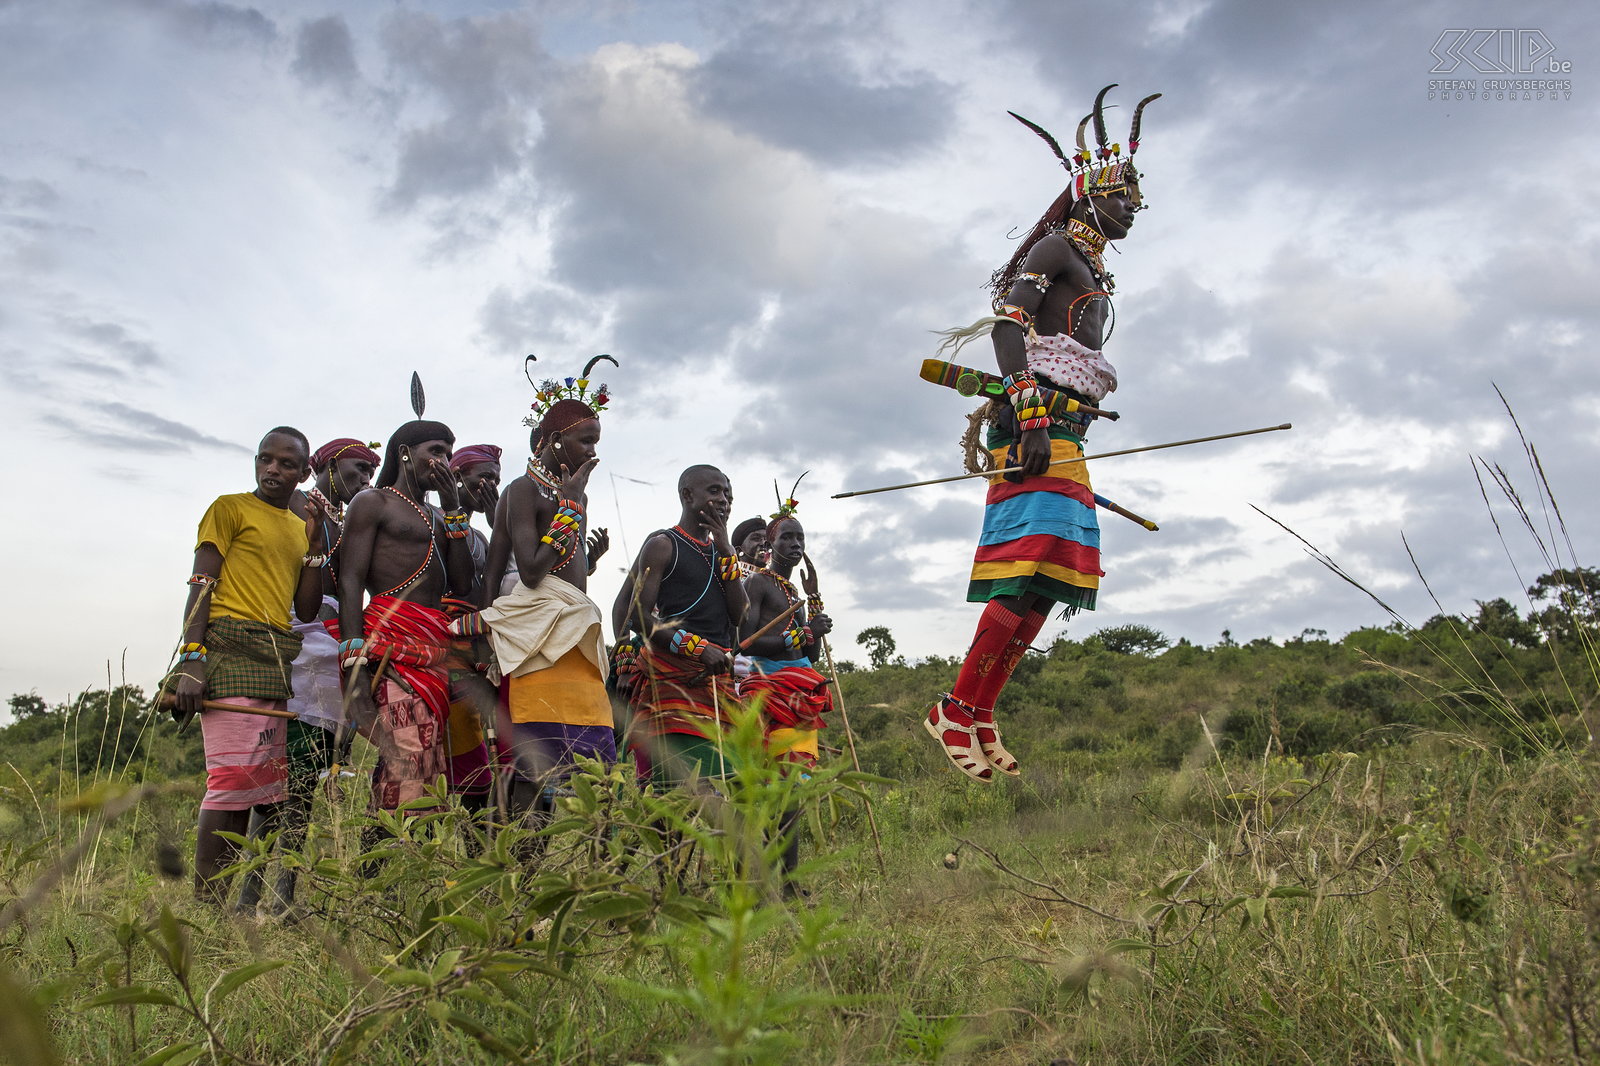 Suguta Marma - Dansende Samburu morans De Samburu morans maken indrukwekkende hoge sprongen tijdens het dansen. Stefan Cruysberghs